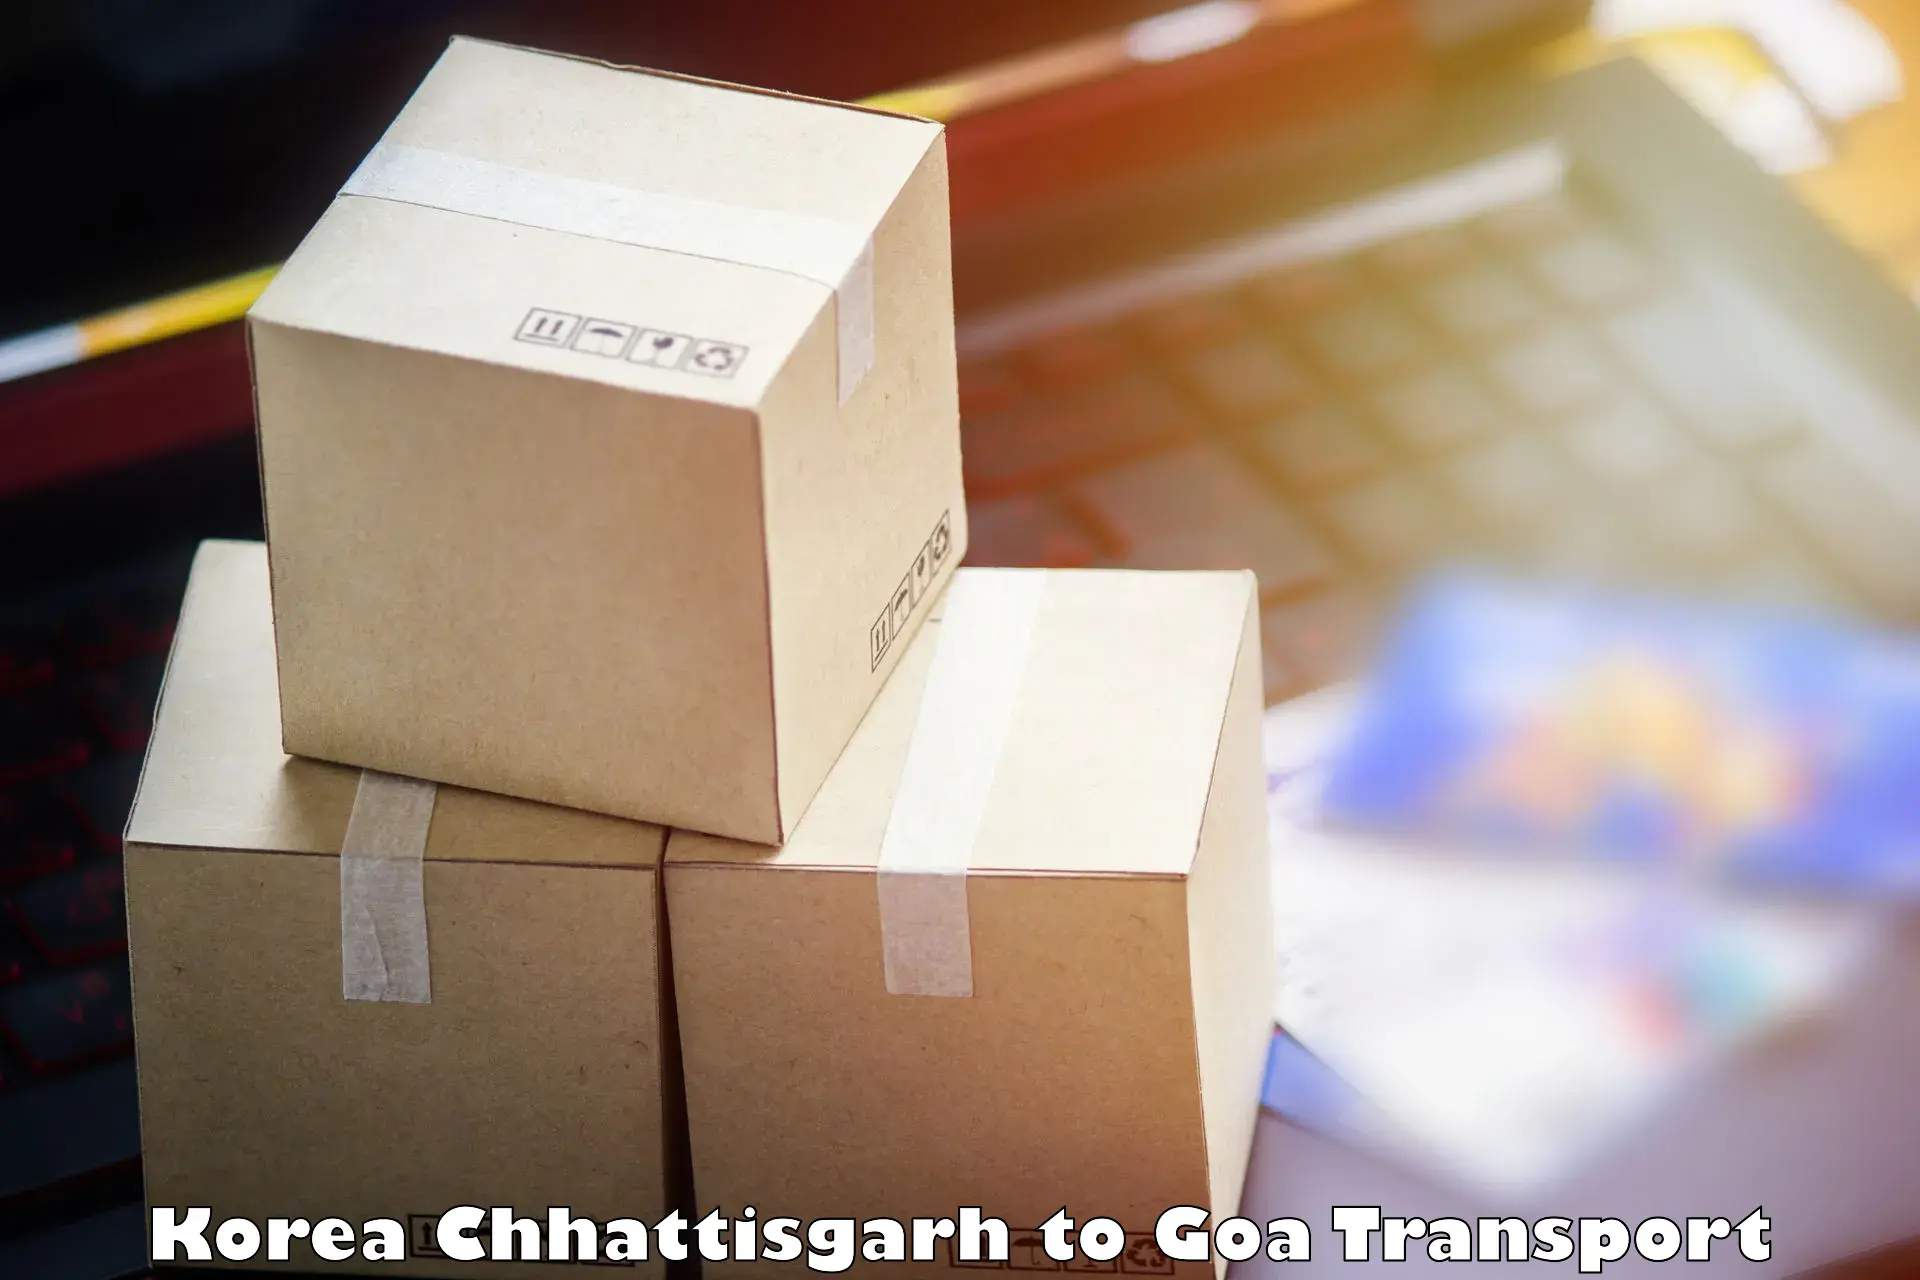 Cargo transport services Korea Chhattisgarh to Mormugao Port